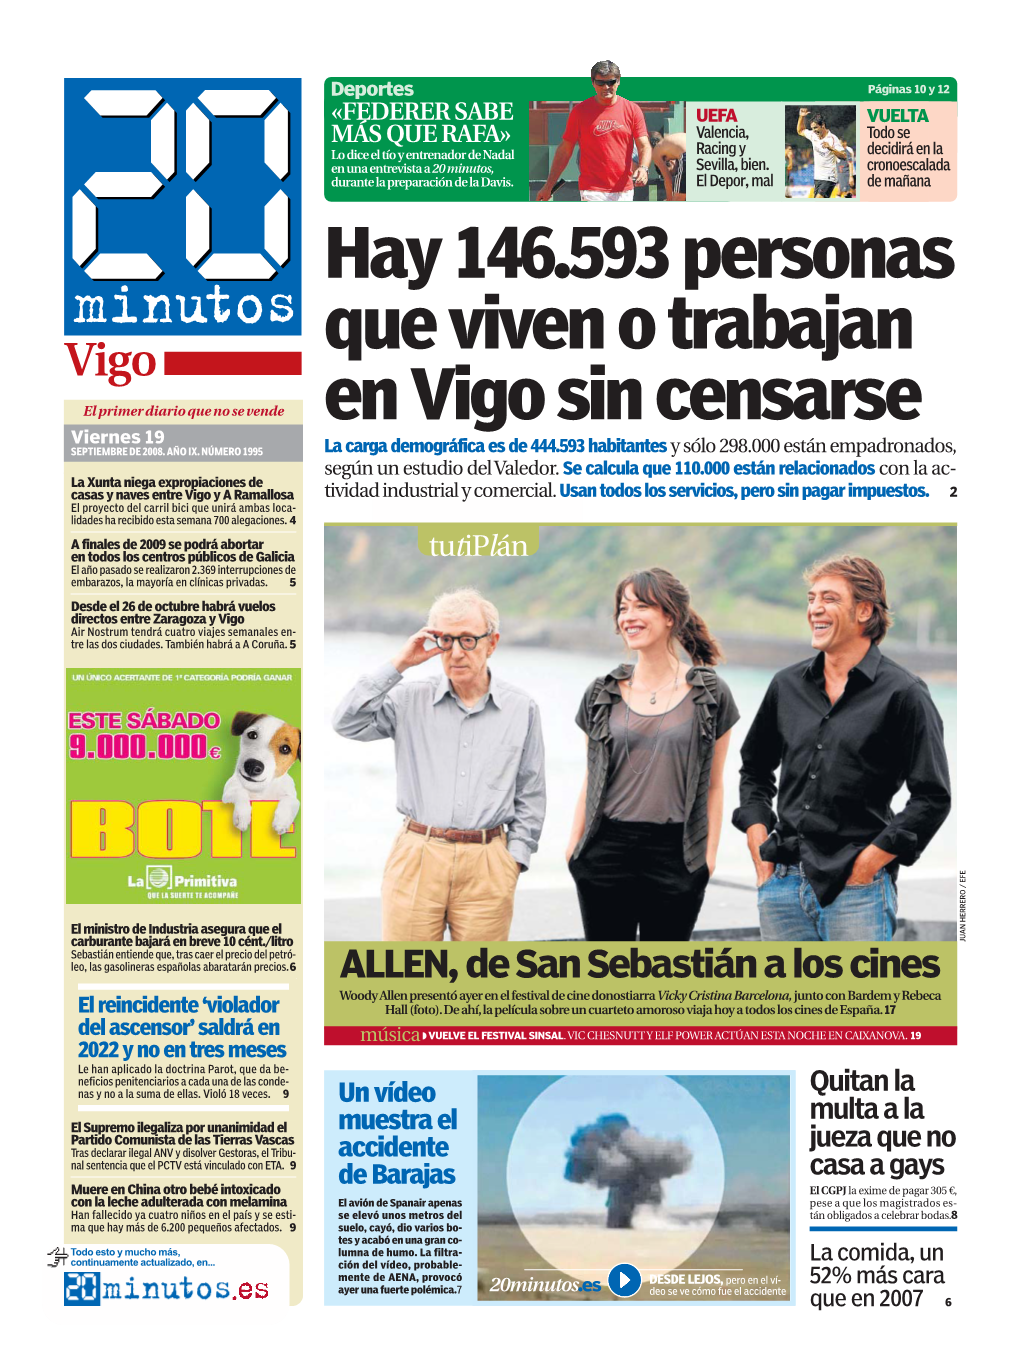 Hay 146.593 Personas Que Viven O Trabajan En Vigo Sin Censarse